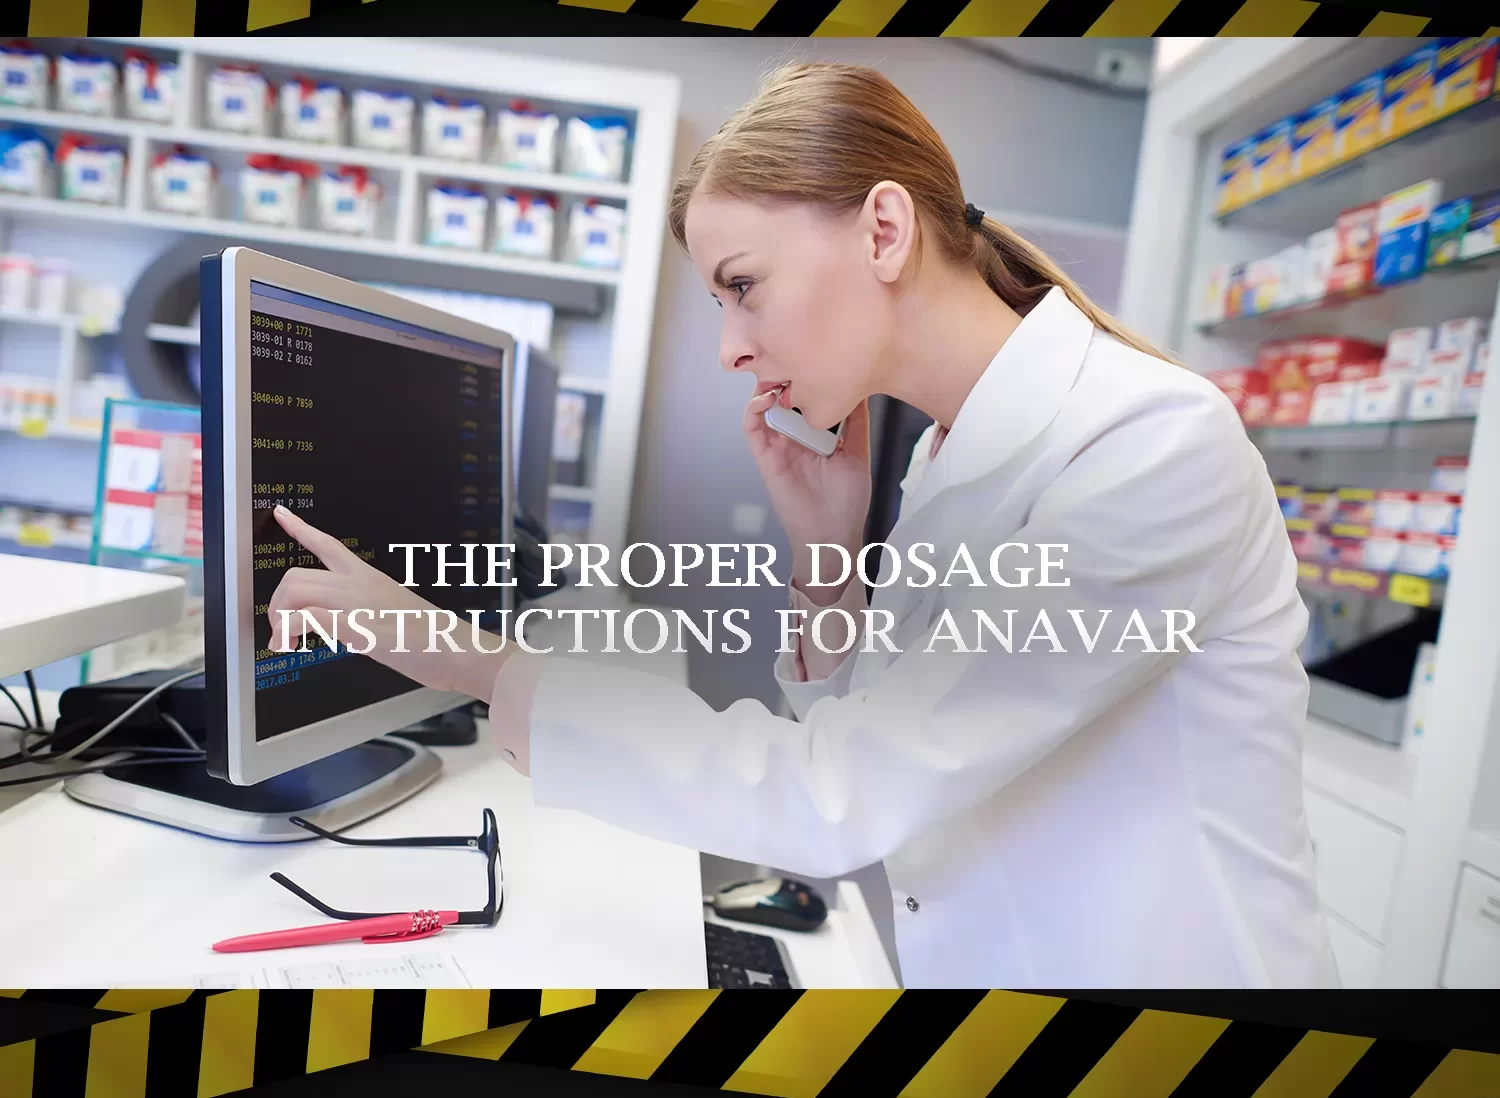 Anavar proper dosage instructions